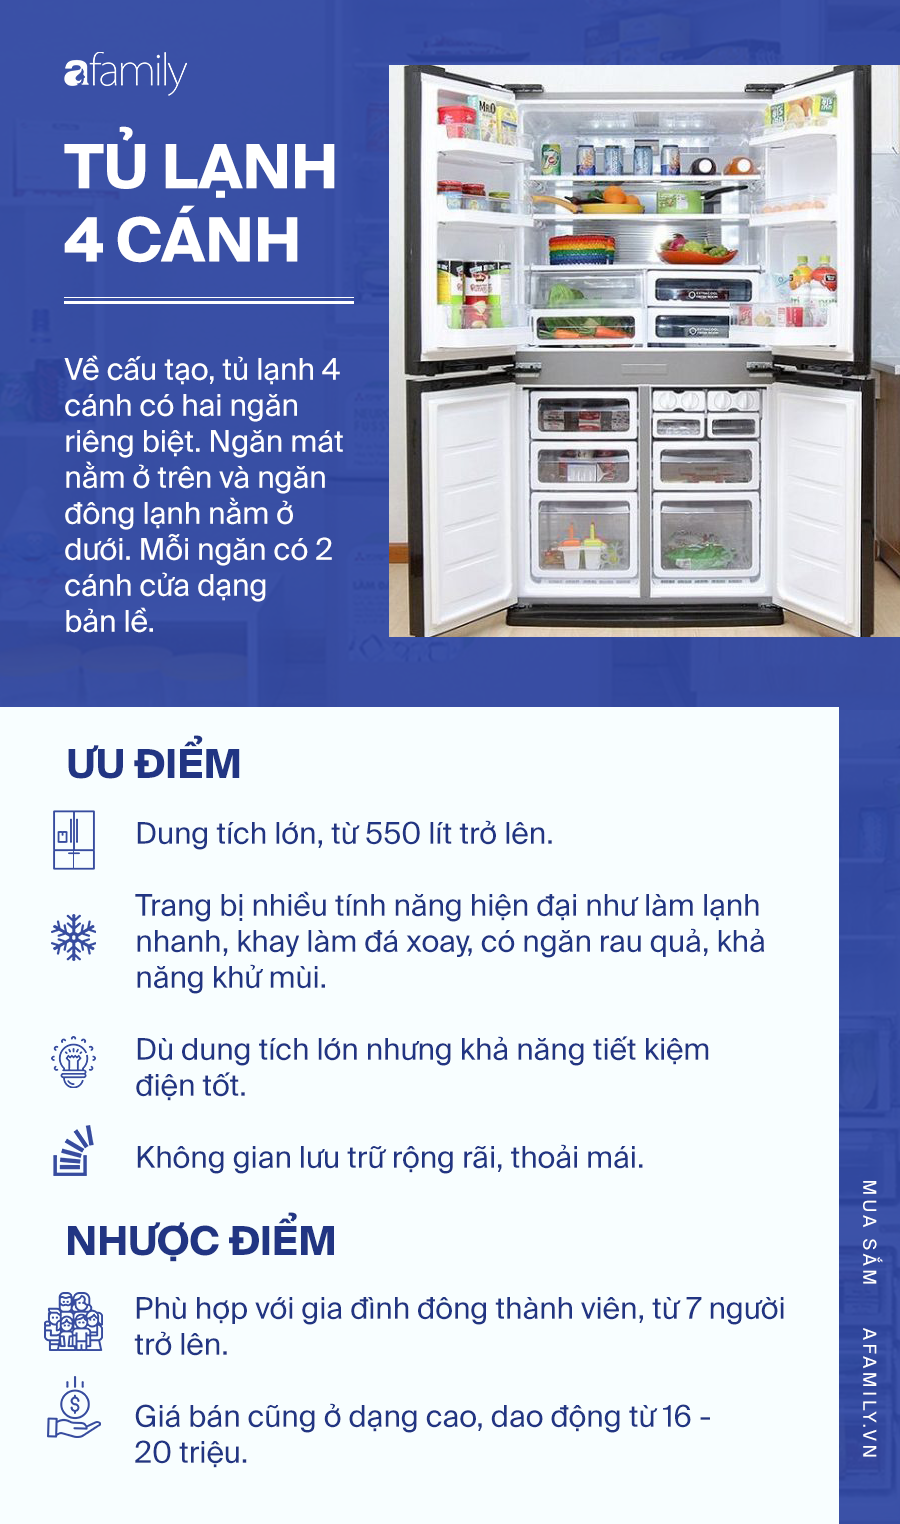 Kinh nghiệm chọn mua tủ lạnh theo ưu, nhược điểm: Mỗi loại một kiểu, phải tìm hiểu mới mong lựa được cái ưng ý nhất - Ảnh 6.